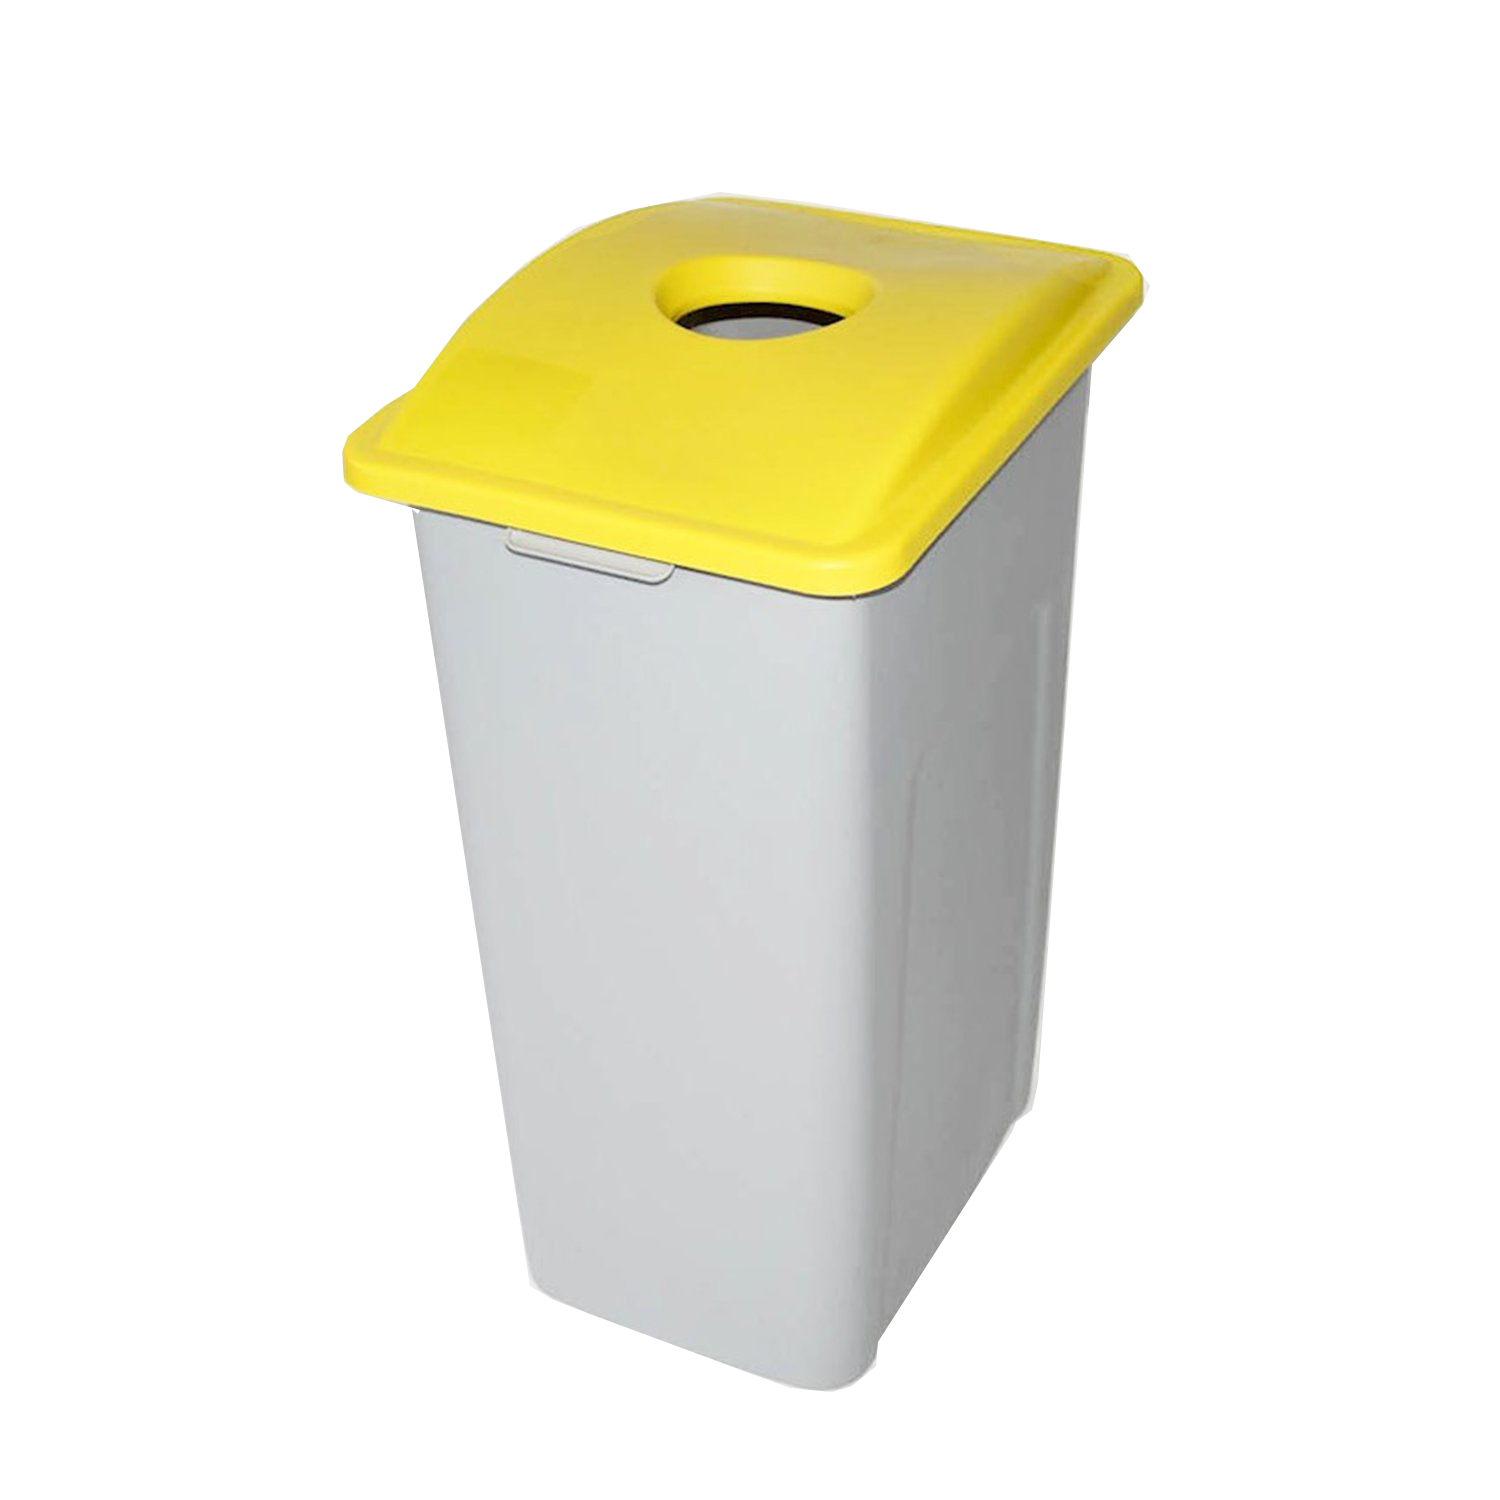 WWXL-GL Je kan zelf kiezen welke afvalsoort je inzamelt in deze bak, bijvoorbeeld restafval, papier of PMD. Mocht je nog duidelijker willen aangeven voor welke afvalsoort de bak bedoeld is, dan raden we je aan om onze leuke Waste Watcher stickers te bestellen.